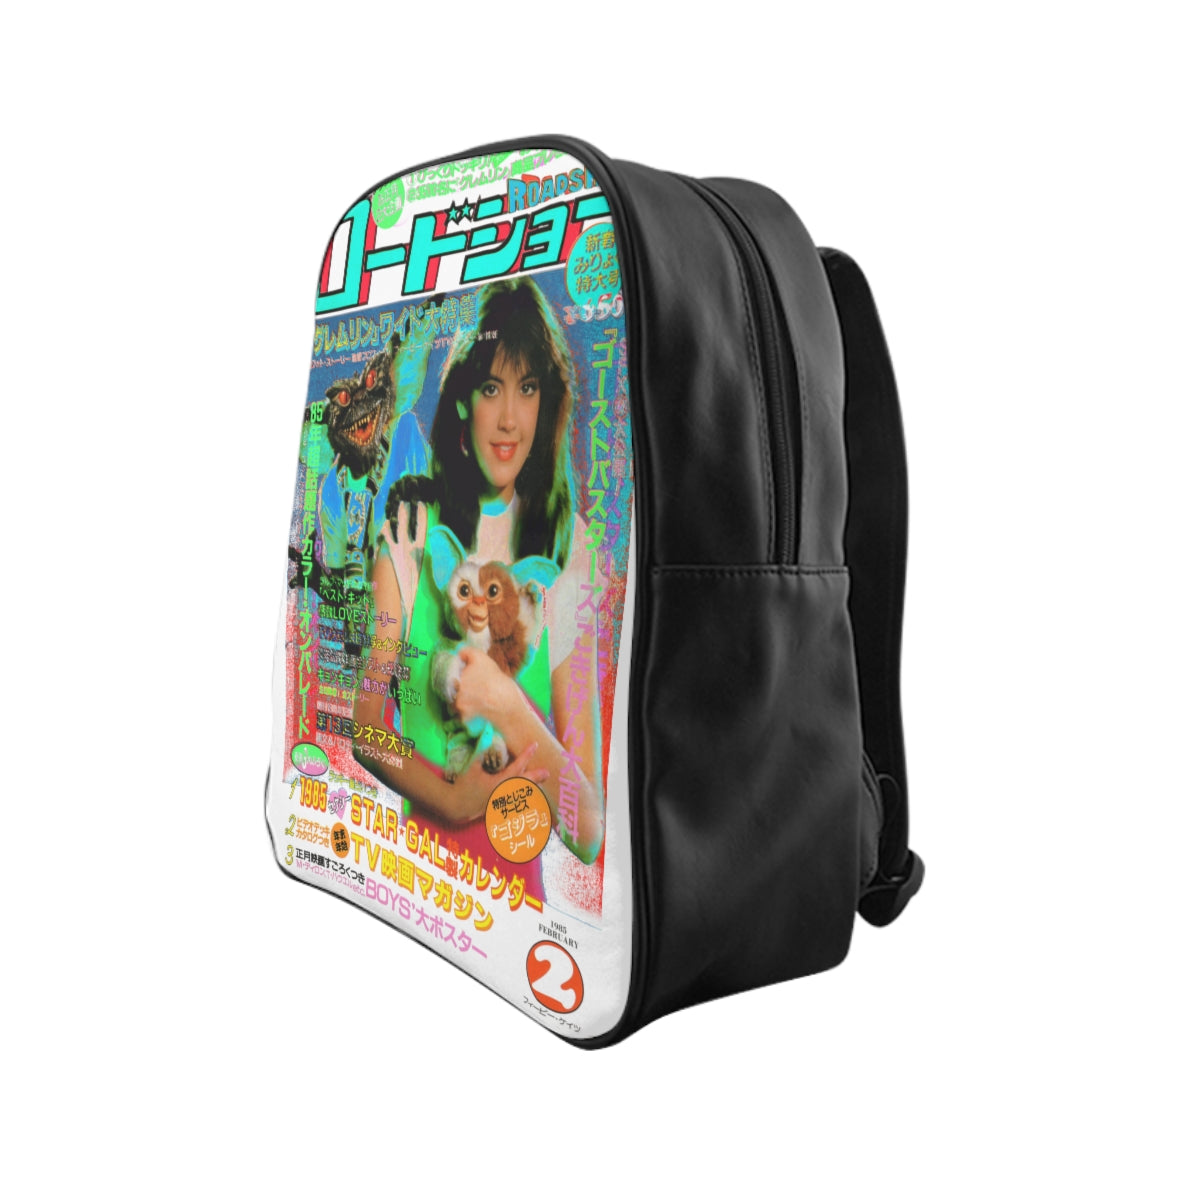 Gremlins Star Gal Backpack